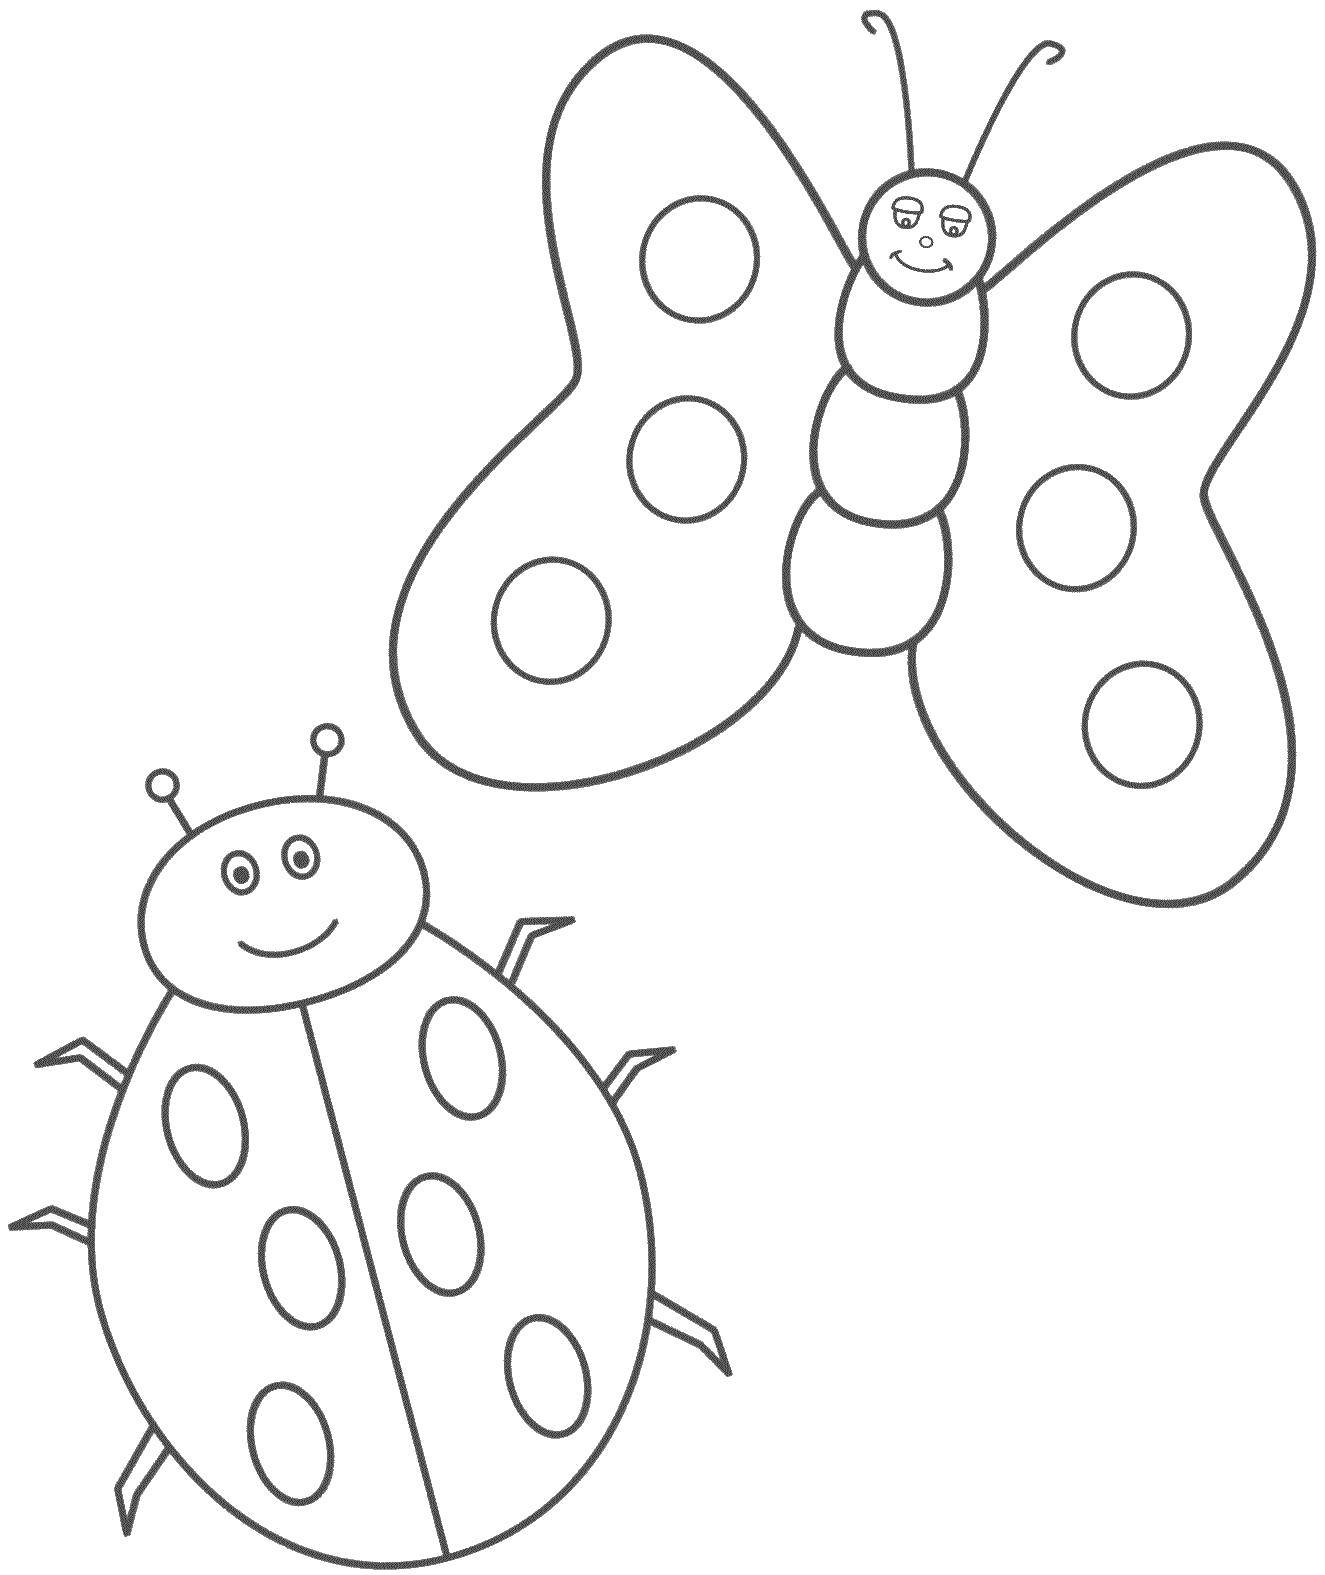 Раскраска насекомые для детей 3 4 лет. Насекомые. Раскраска. Бабочка раскраска для детей. Раскраска насекомые для малышей. Трафарет насекомые для детей.